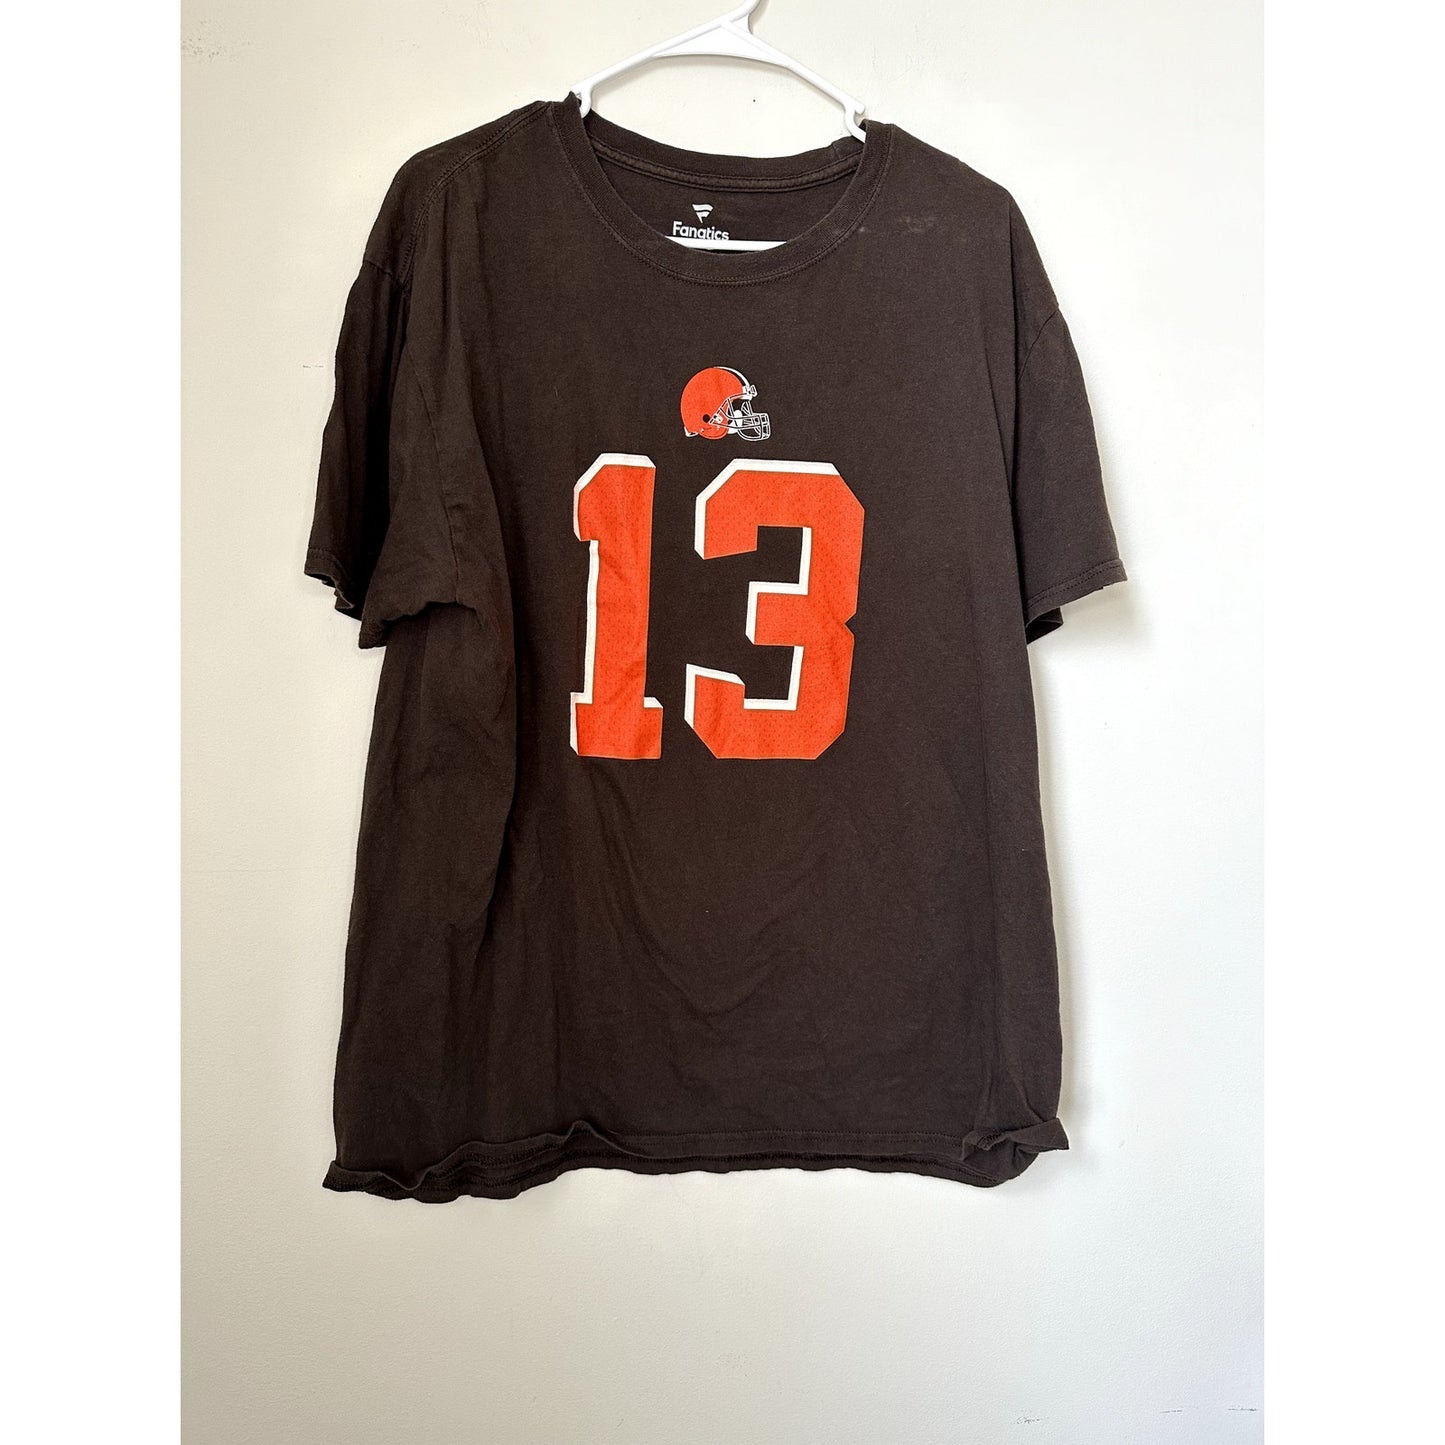 Cleveland Brown Beckham Jr Graphic T-shirt, Size XL